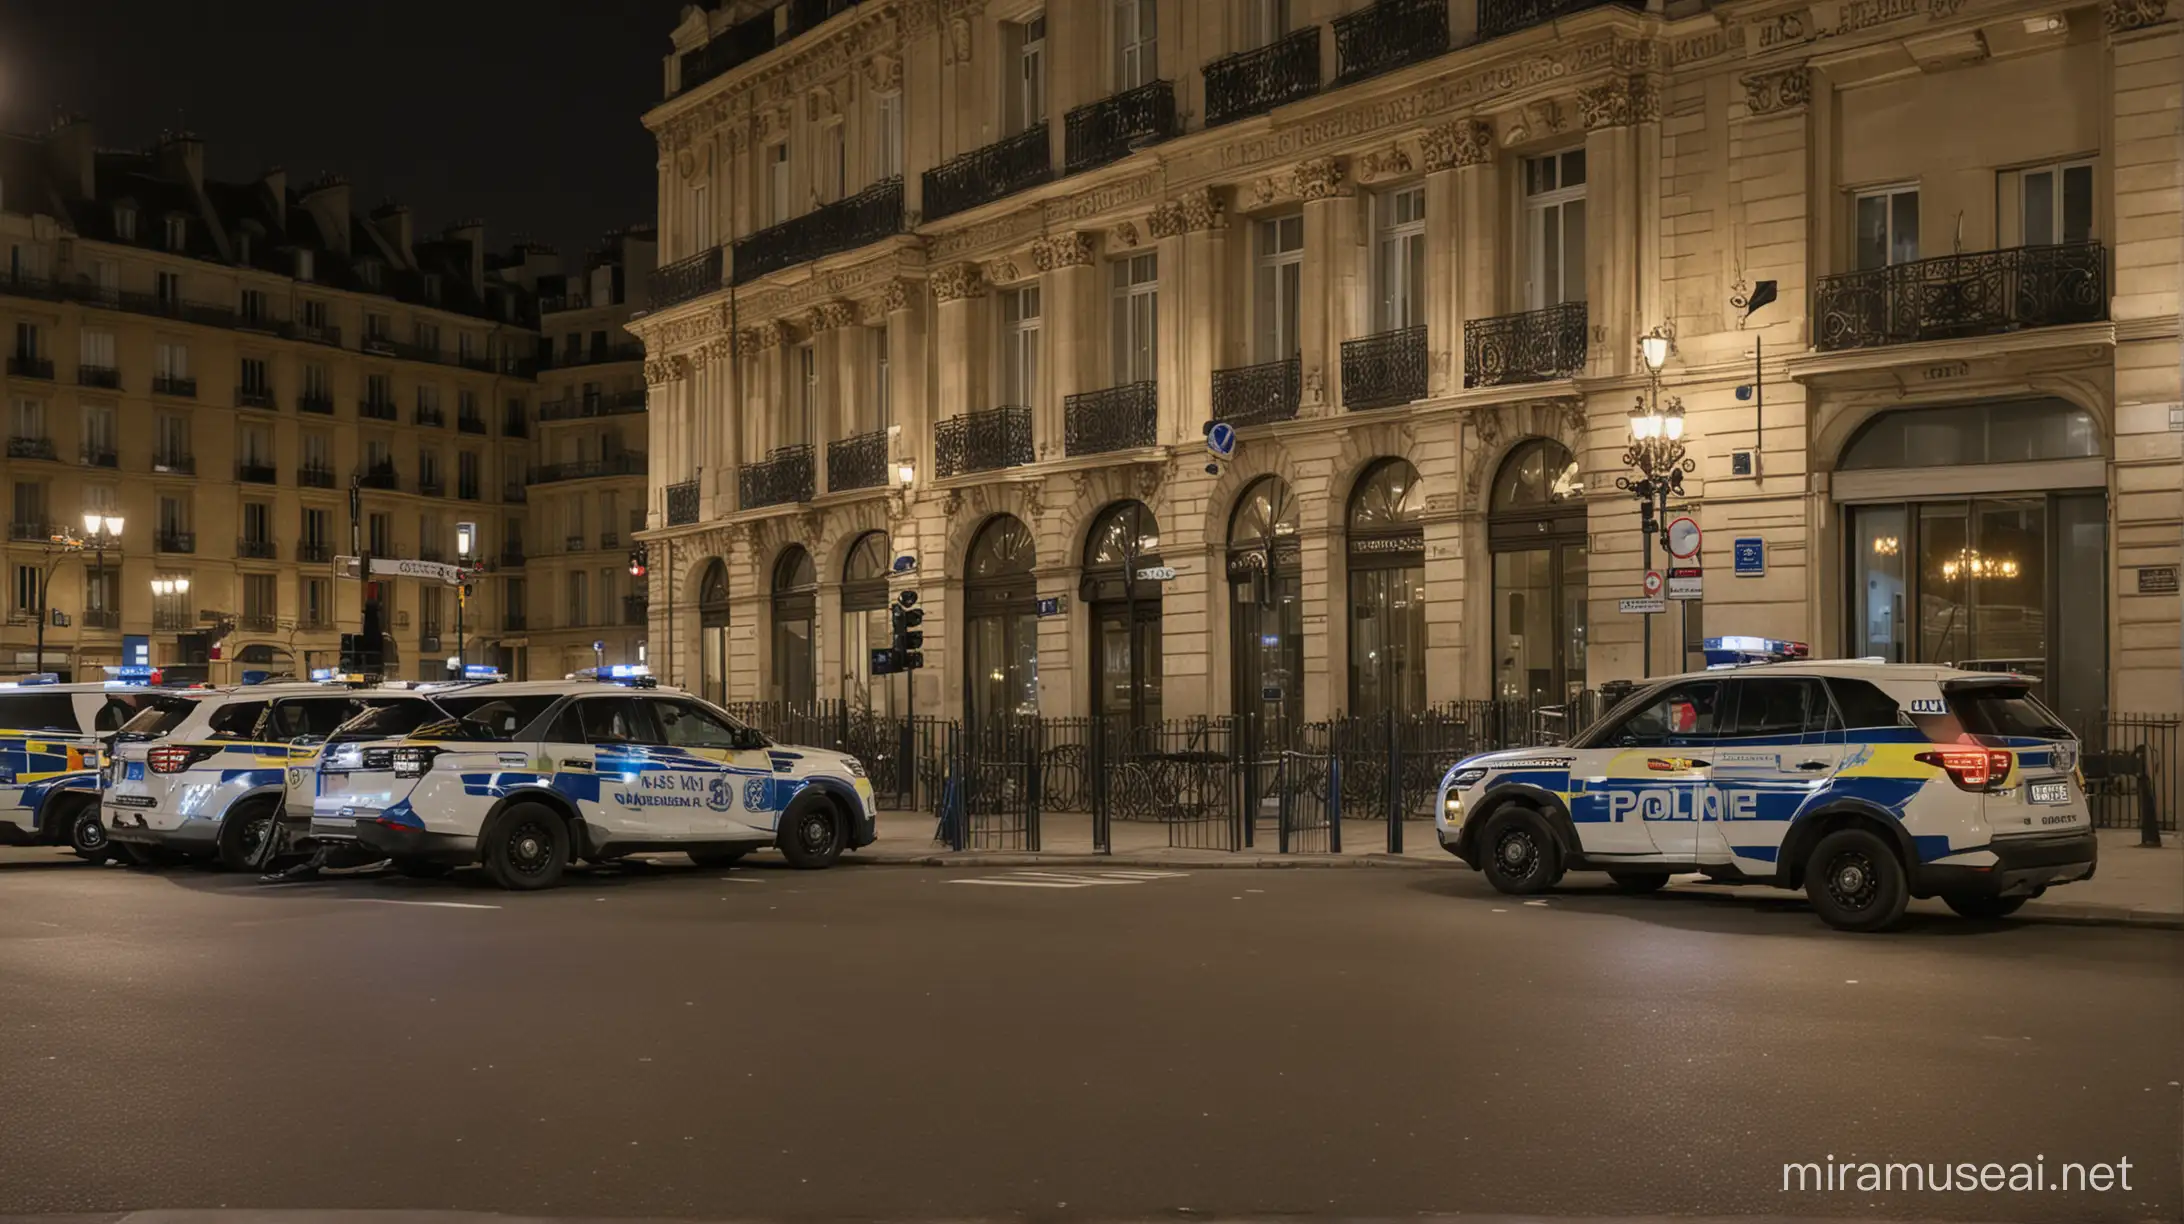 des voitures de police, la nuit, gyrophares allumés, garées devant un immeuble parisien